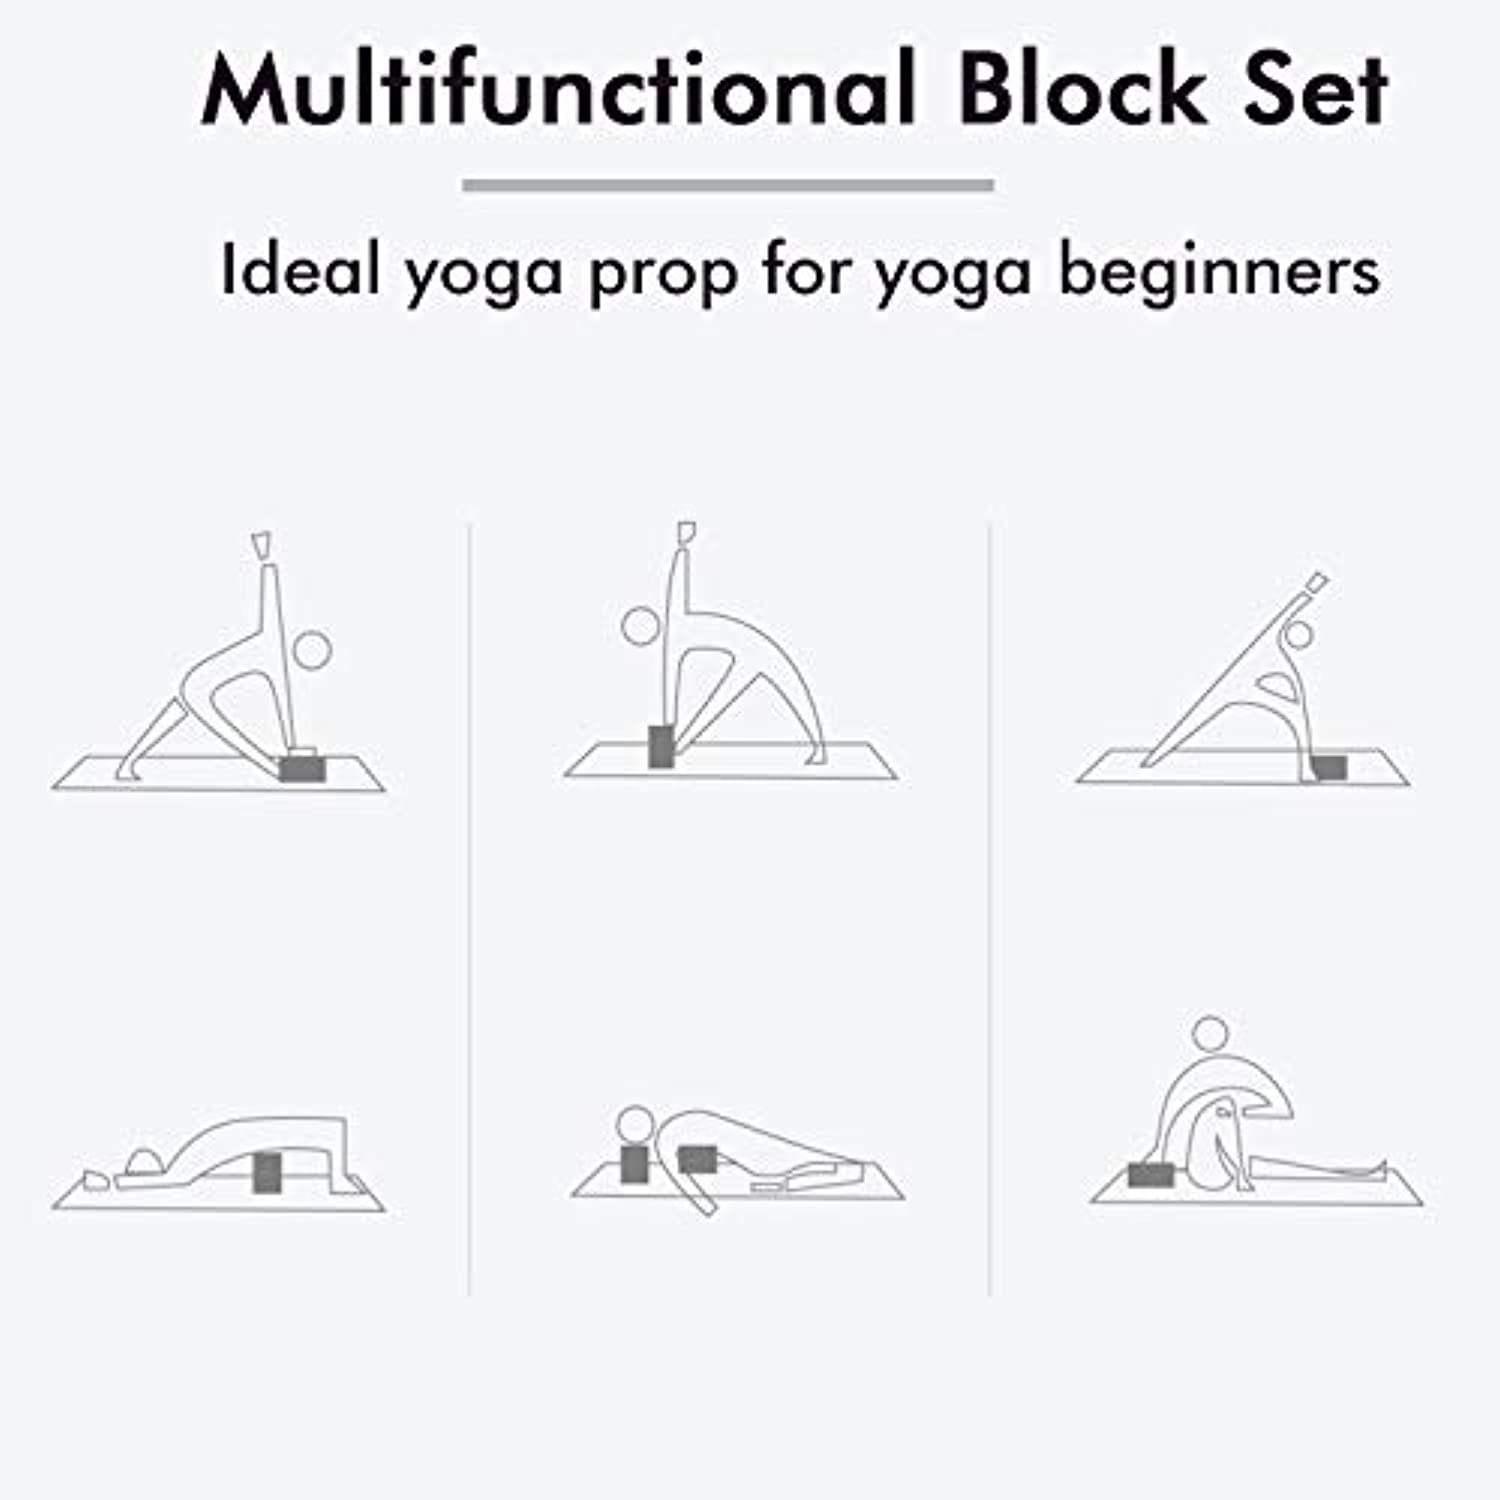 Accesorios de Yoga: 24 opciones para profundizar tus asanas